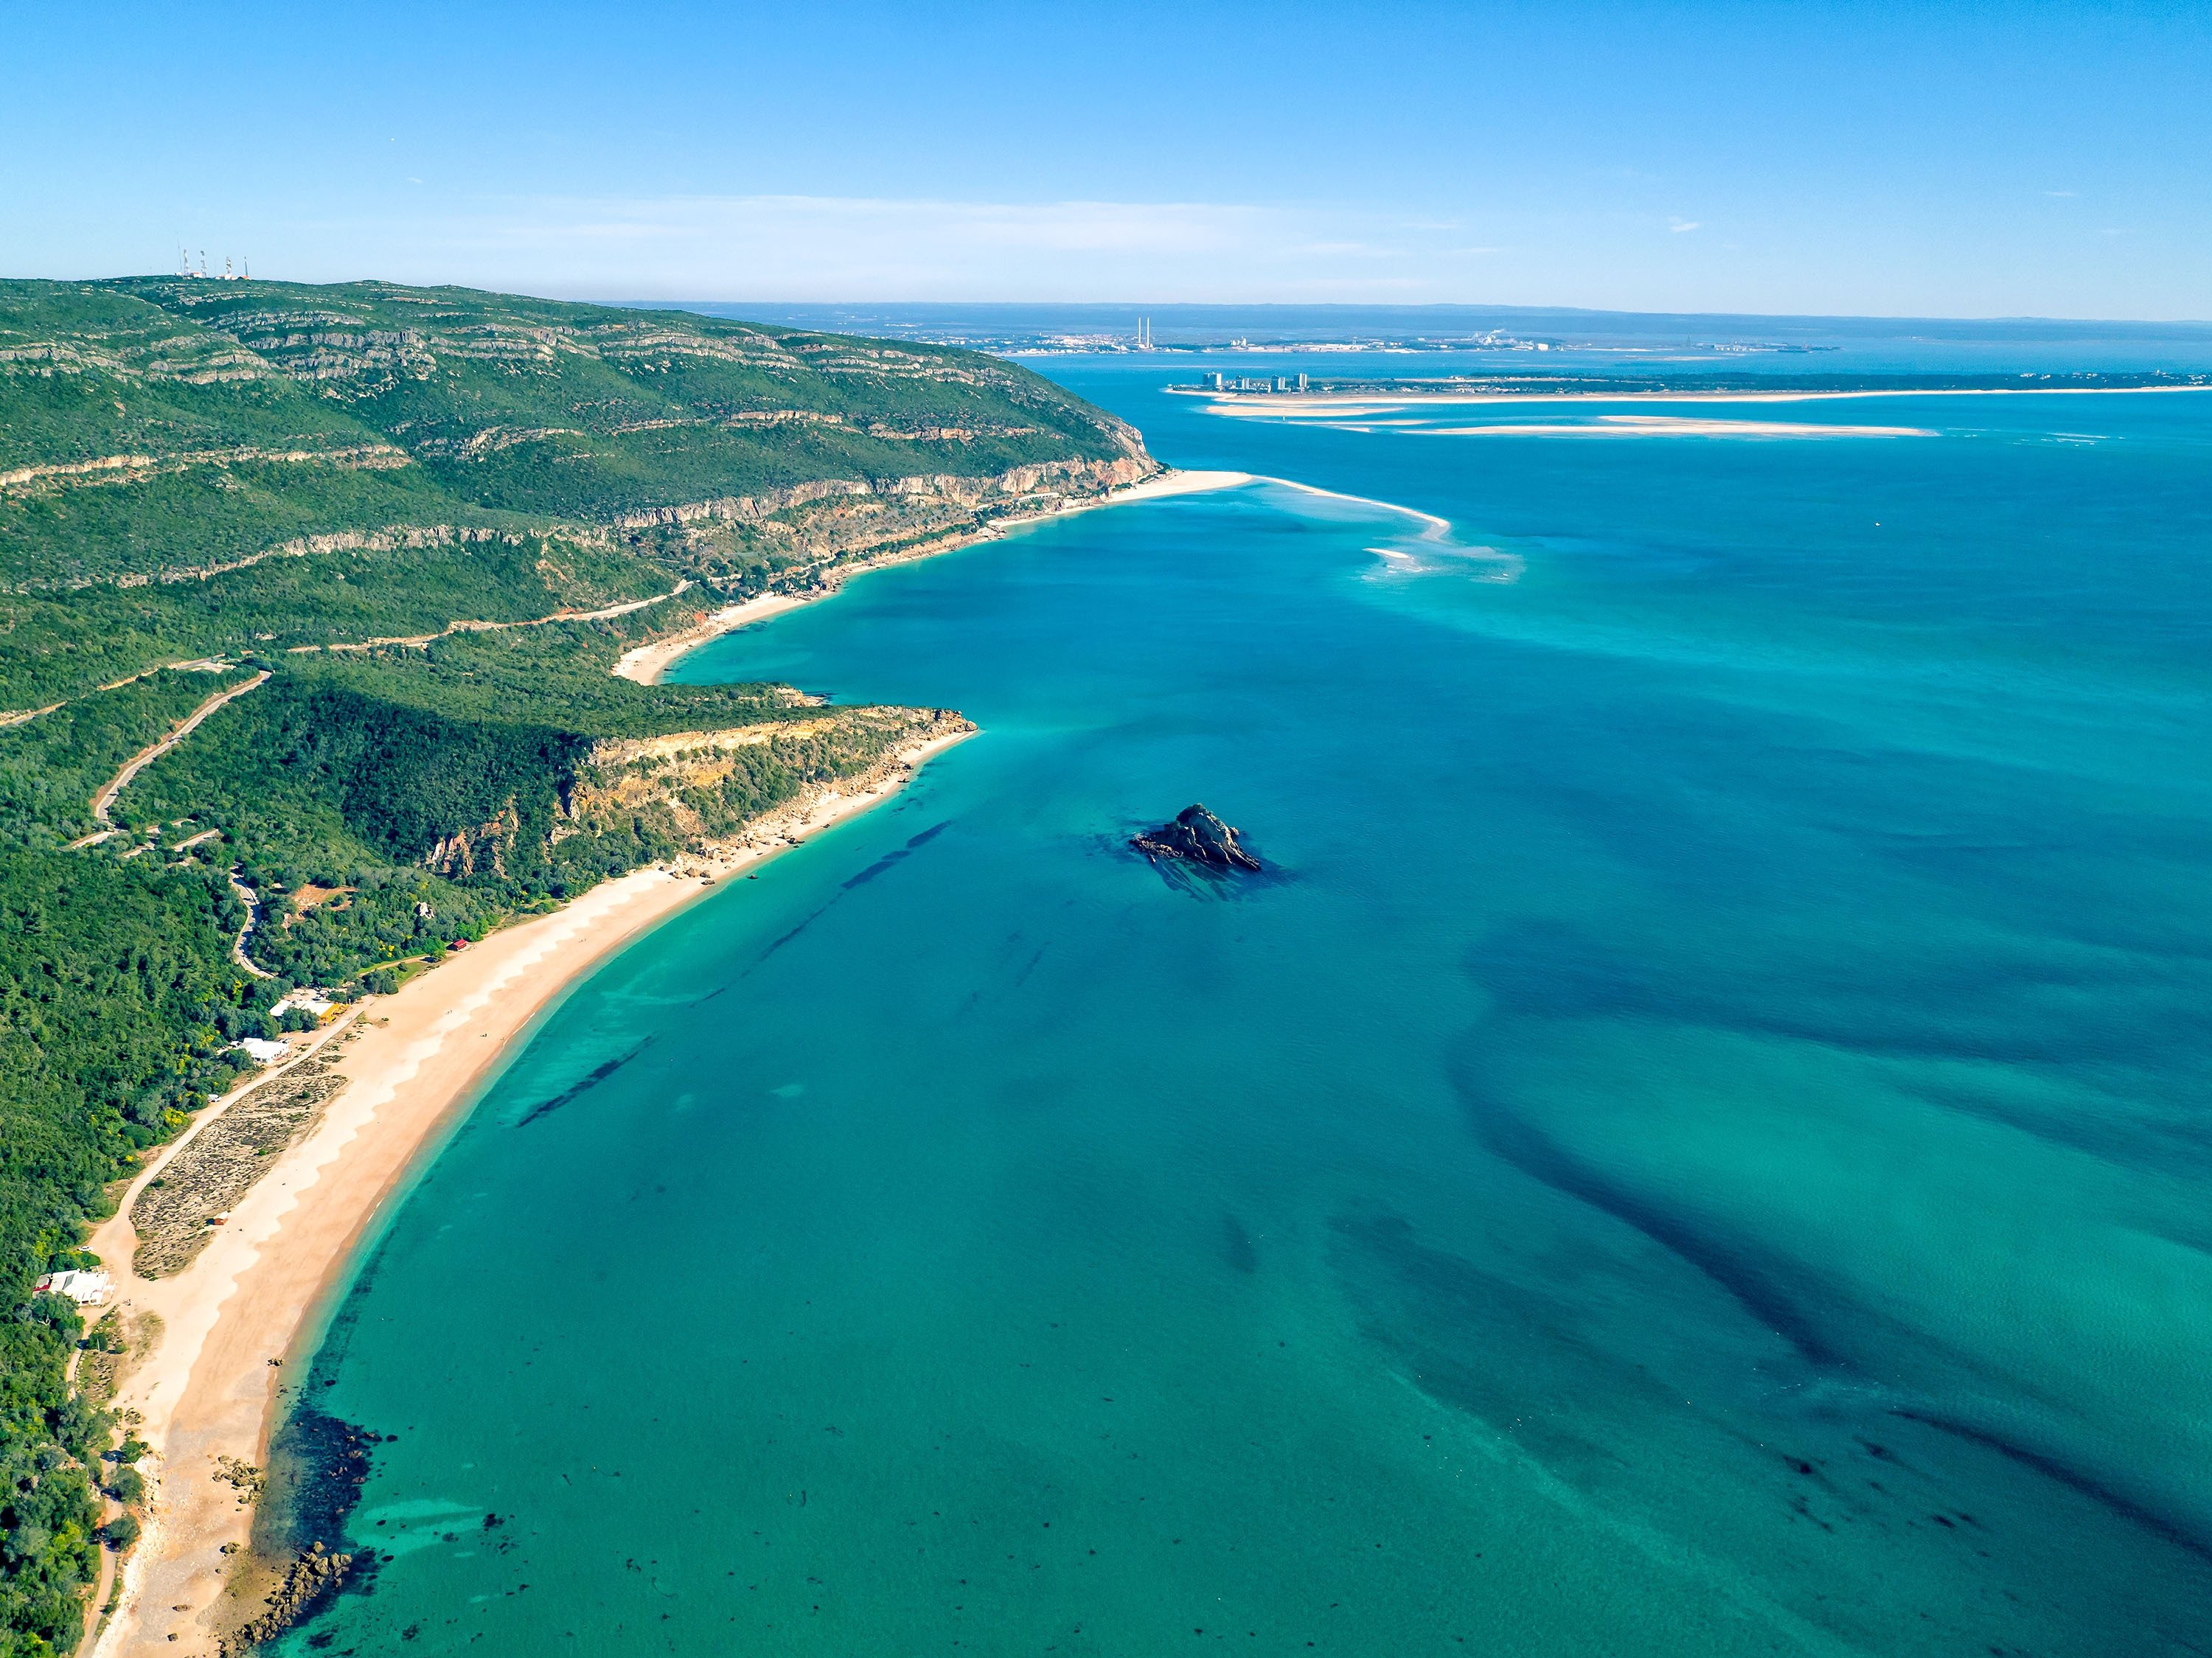 Uma vista aérea da paisagem costeira do Parque Natural da Arrábida em Setupal, em Portugal.  (Foto do Shutterstock)